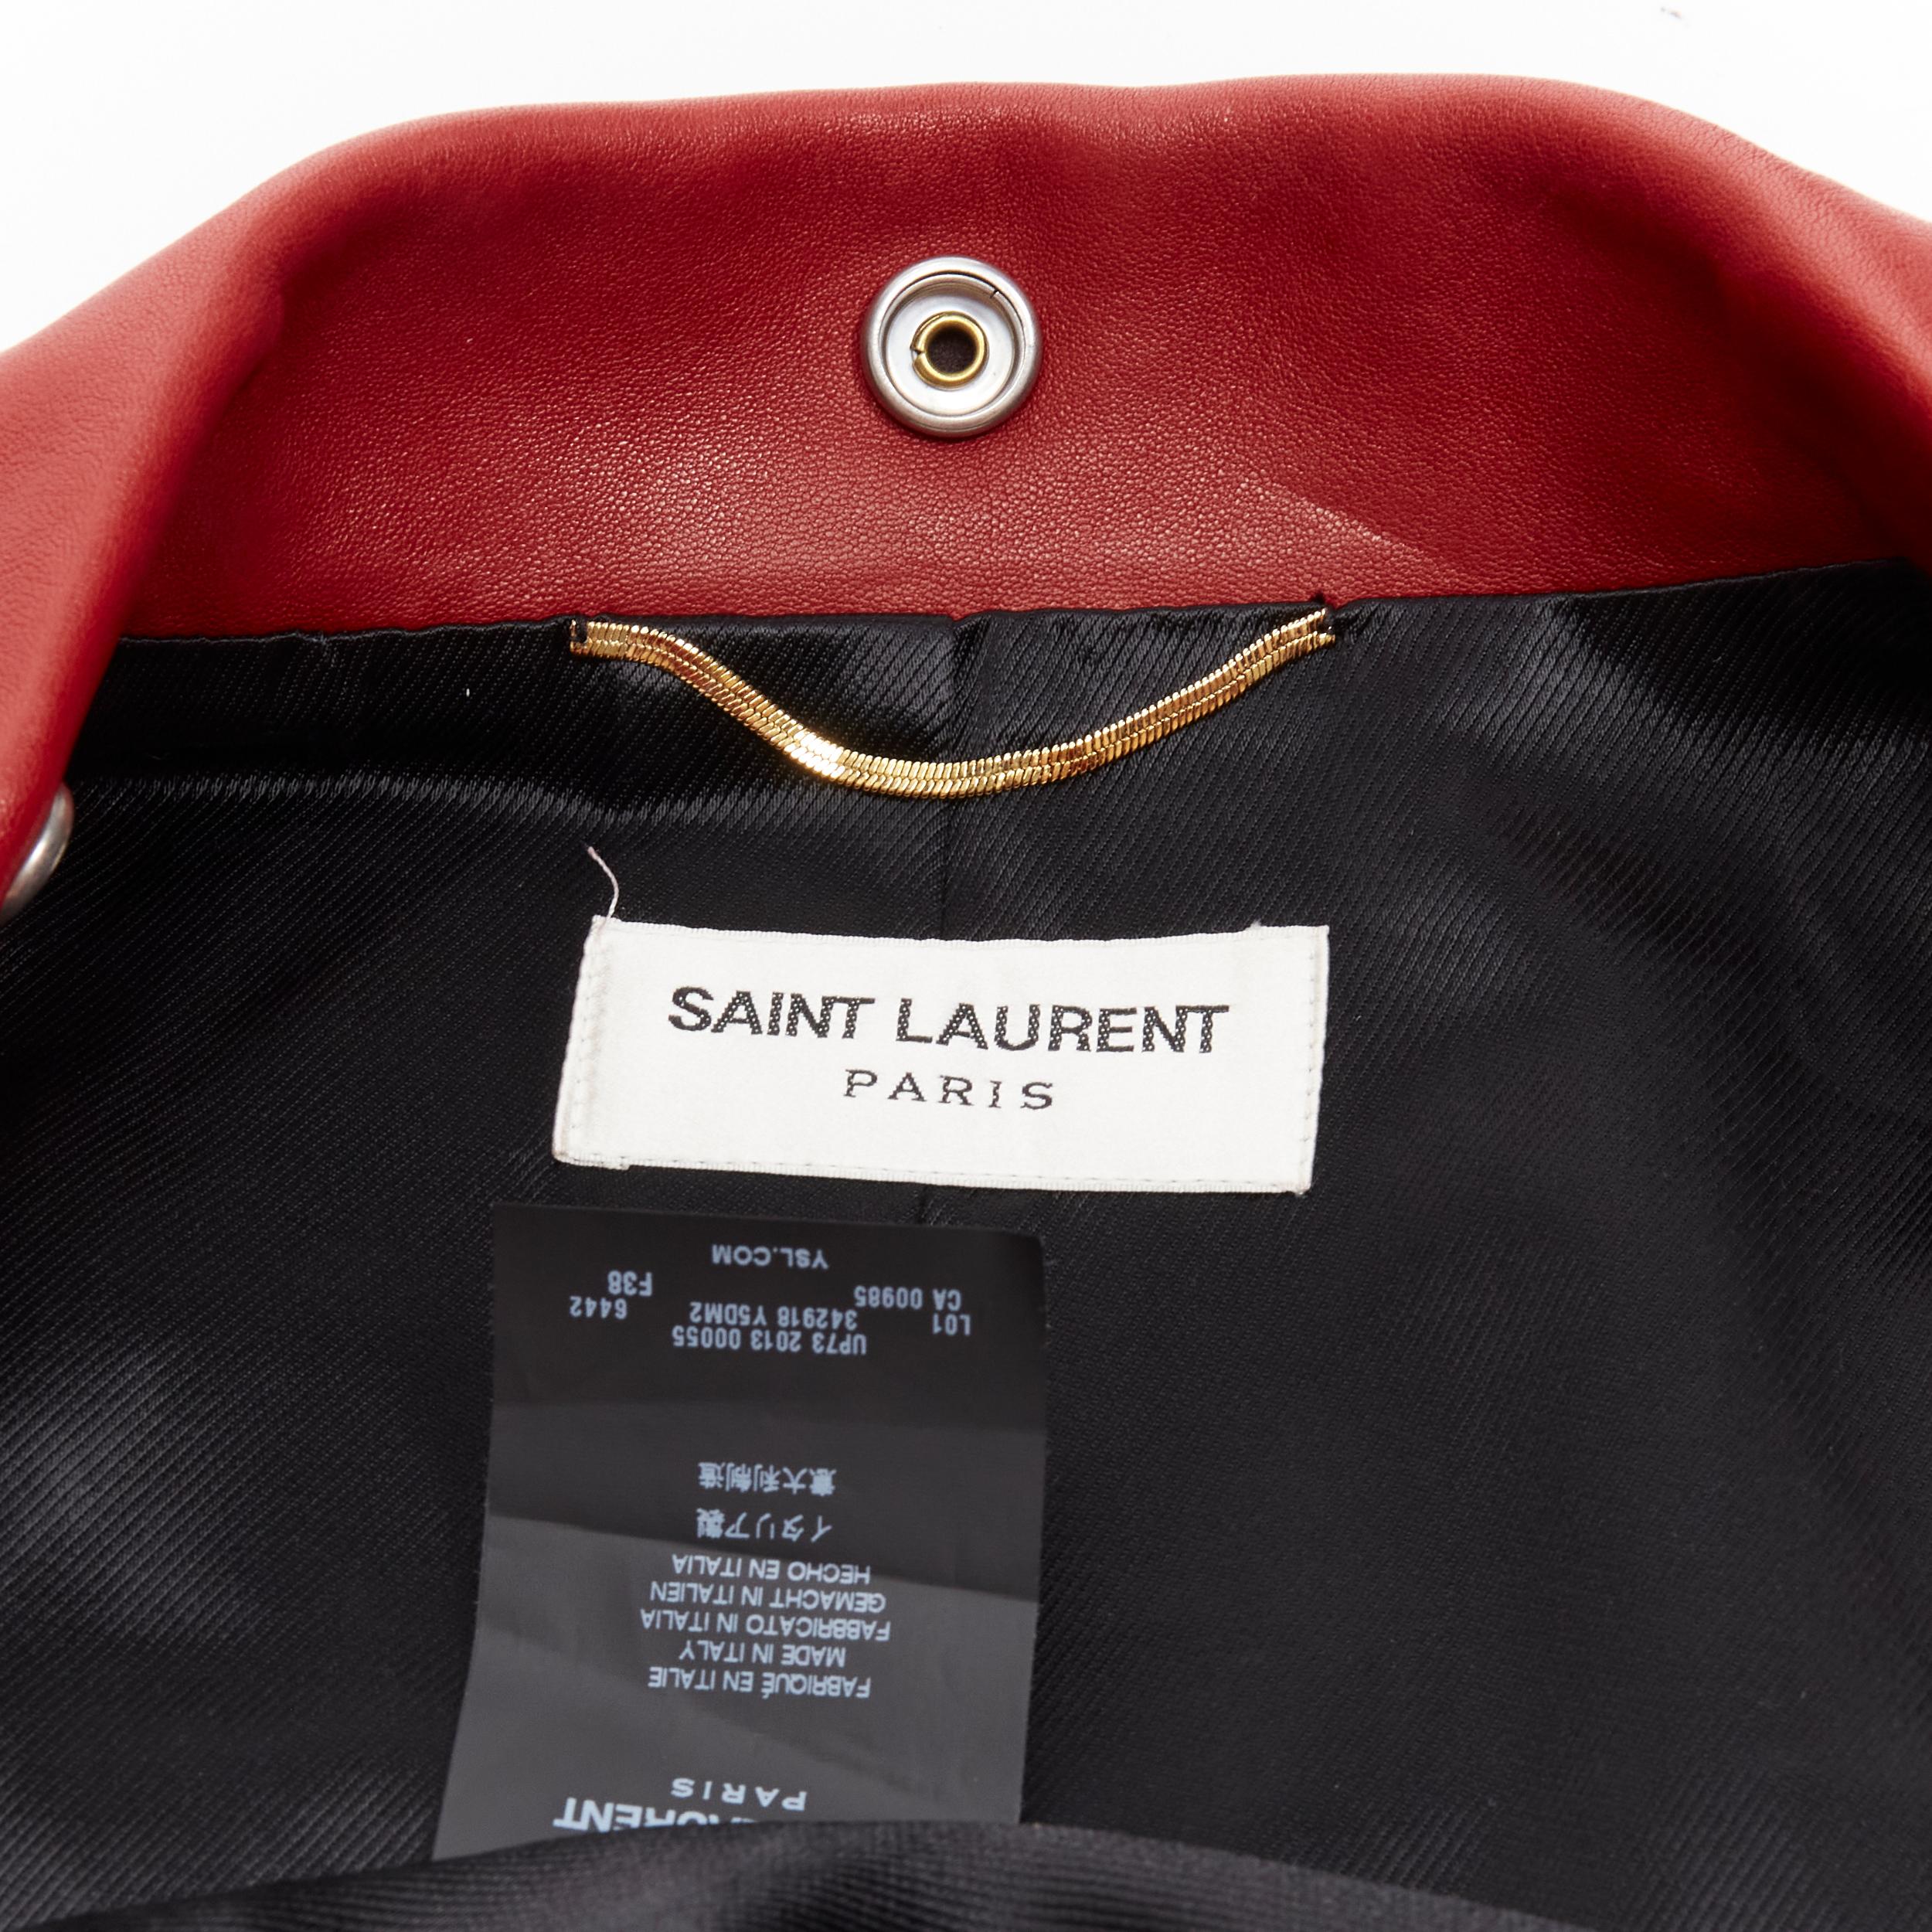 SAINT LAURENT 2013 Hedi Slimane red lambskin leather moto biker jacket FR38 S For Sale 3